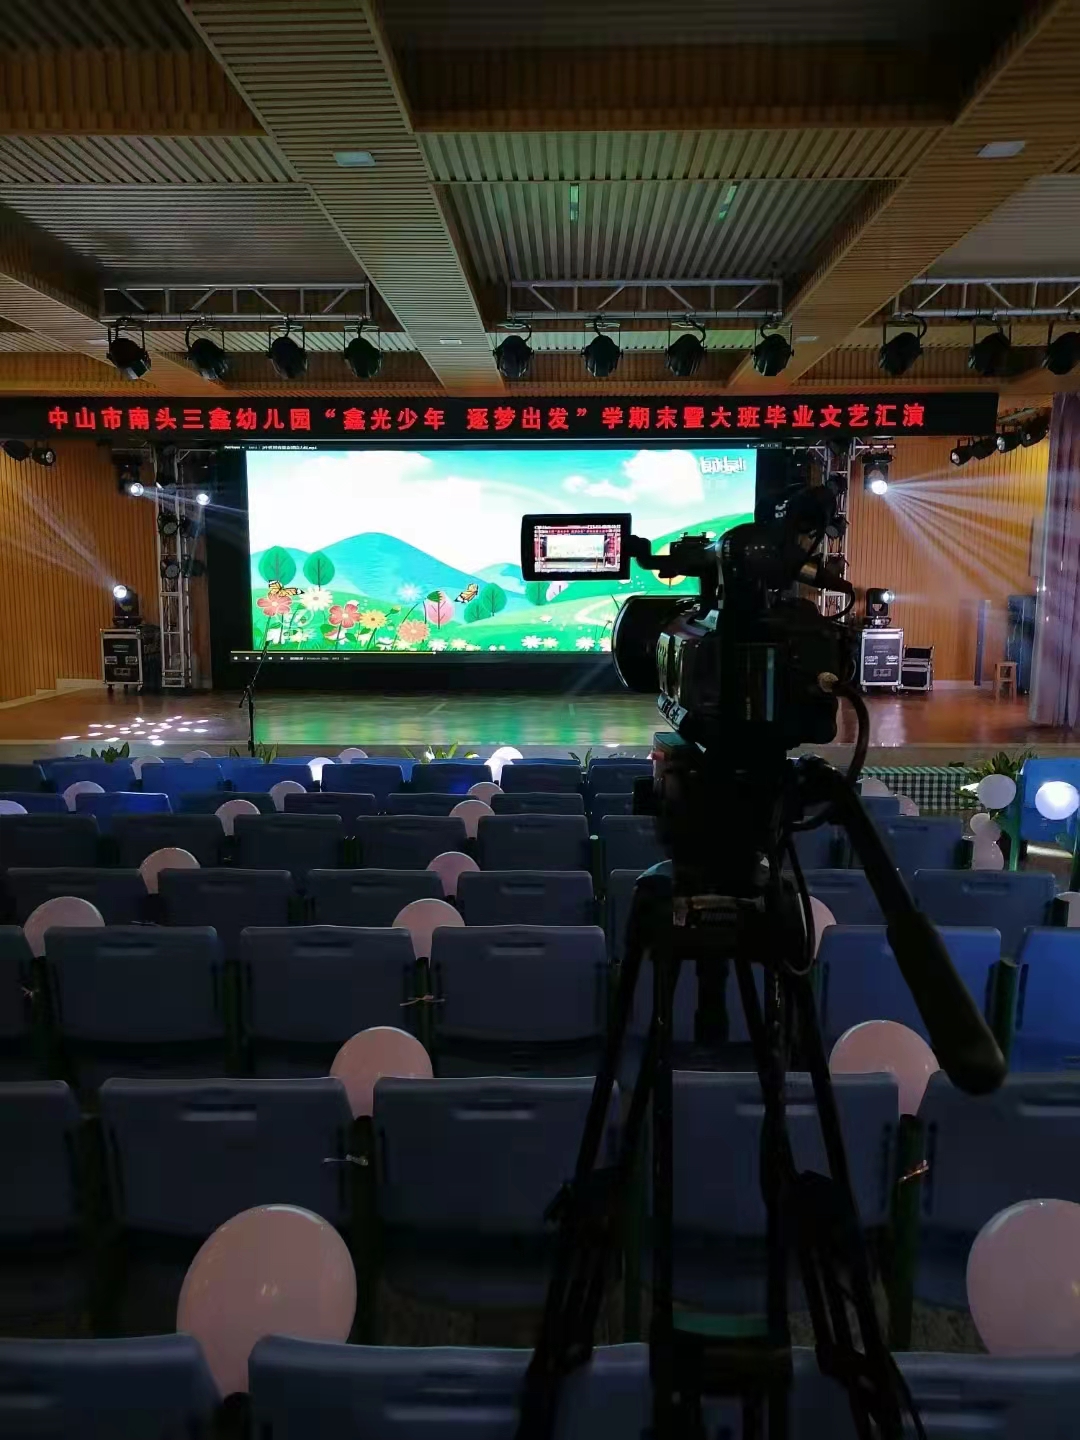 广州大型活动拍摄制作广州大型活动拍摄制作拥有全套拍摄器材,就找龙视影视广告公司